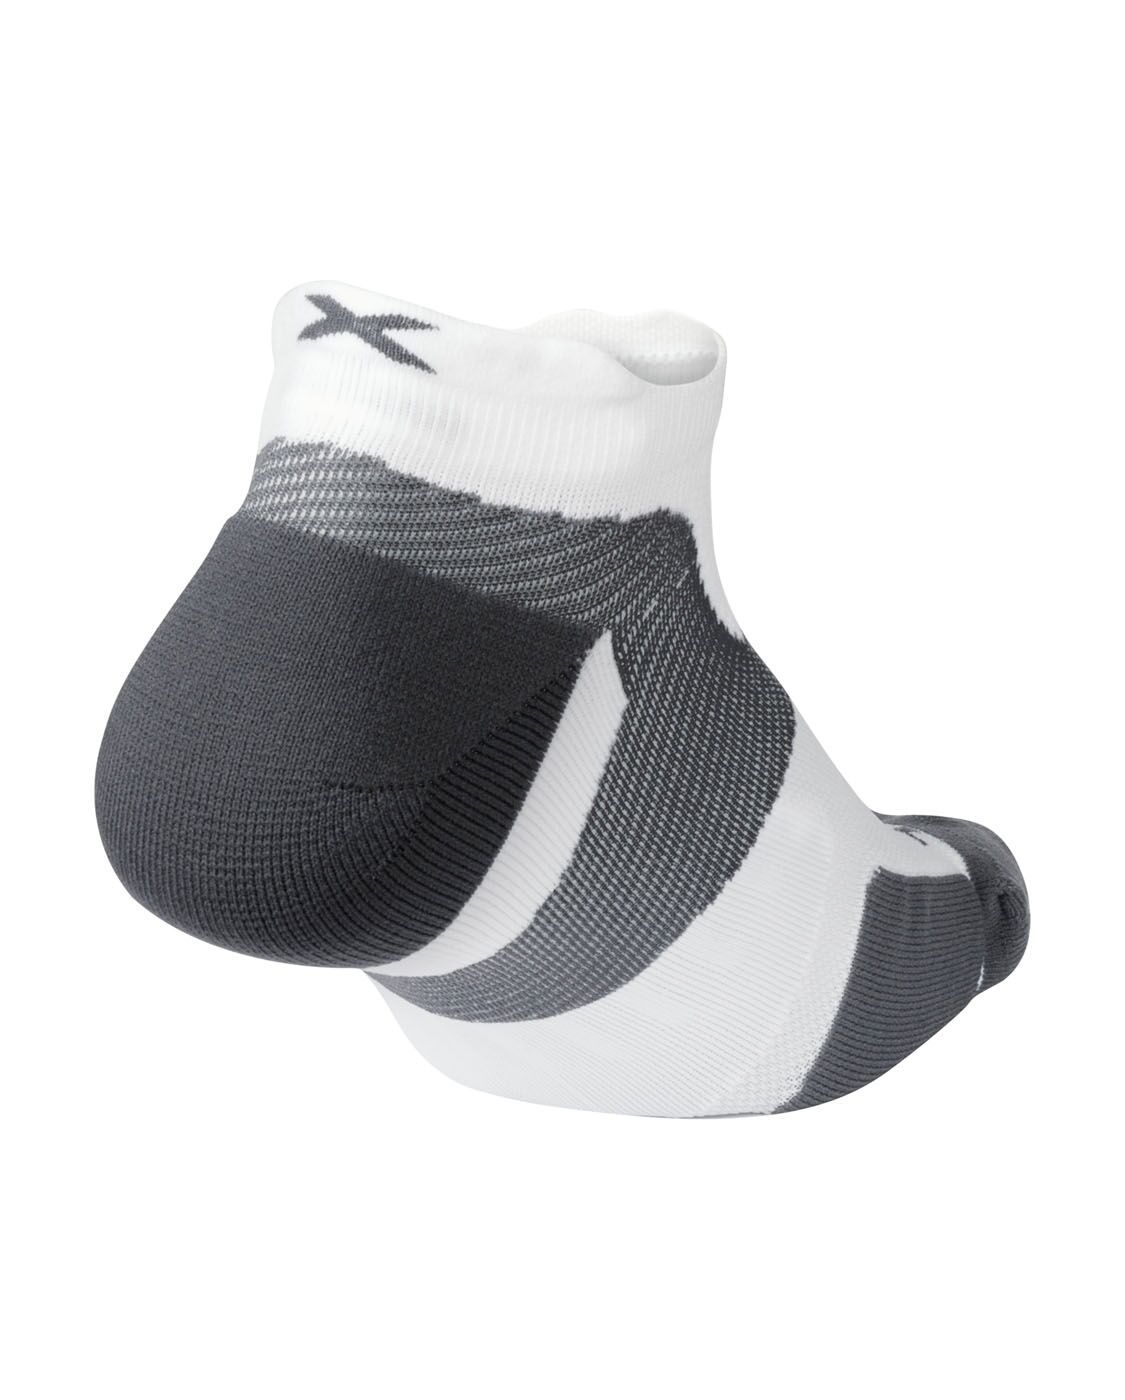 2XU South Africa - Vectr Cushion No Show Socks - White/Grey